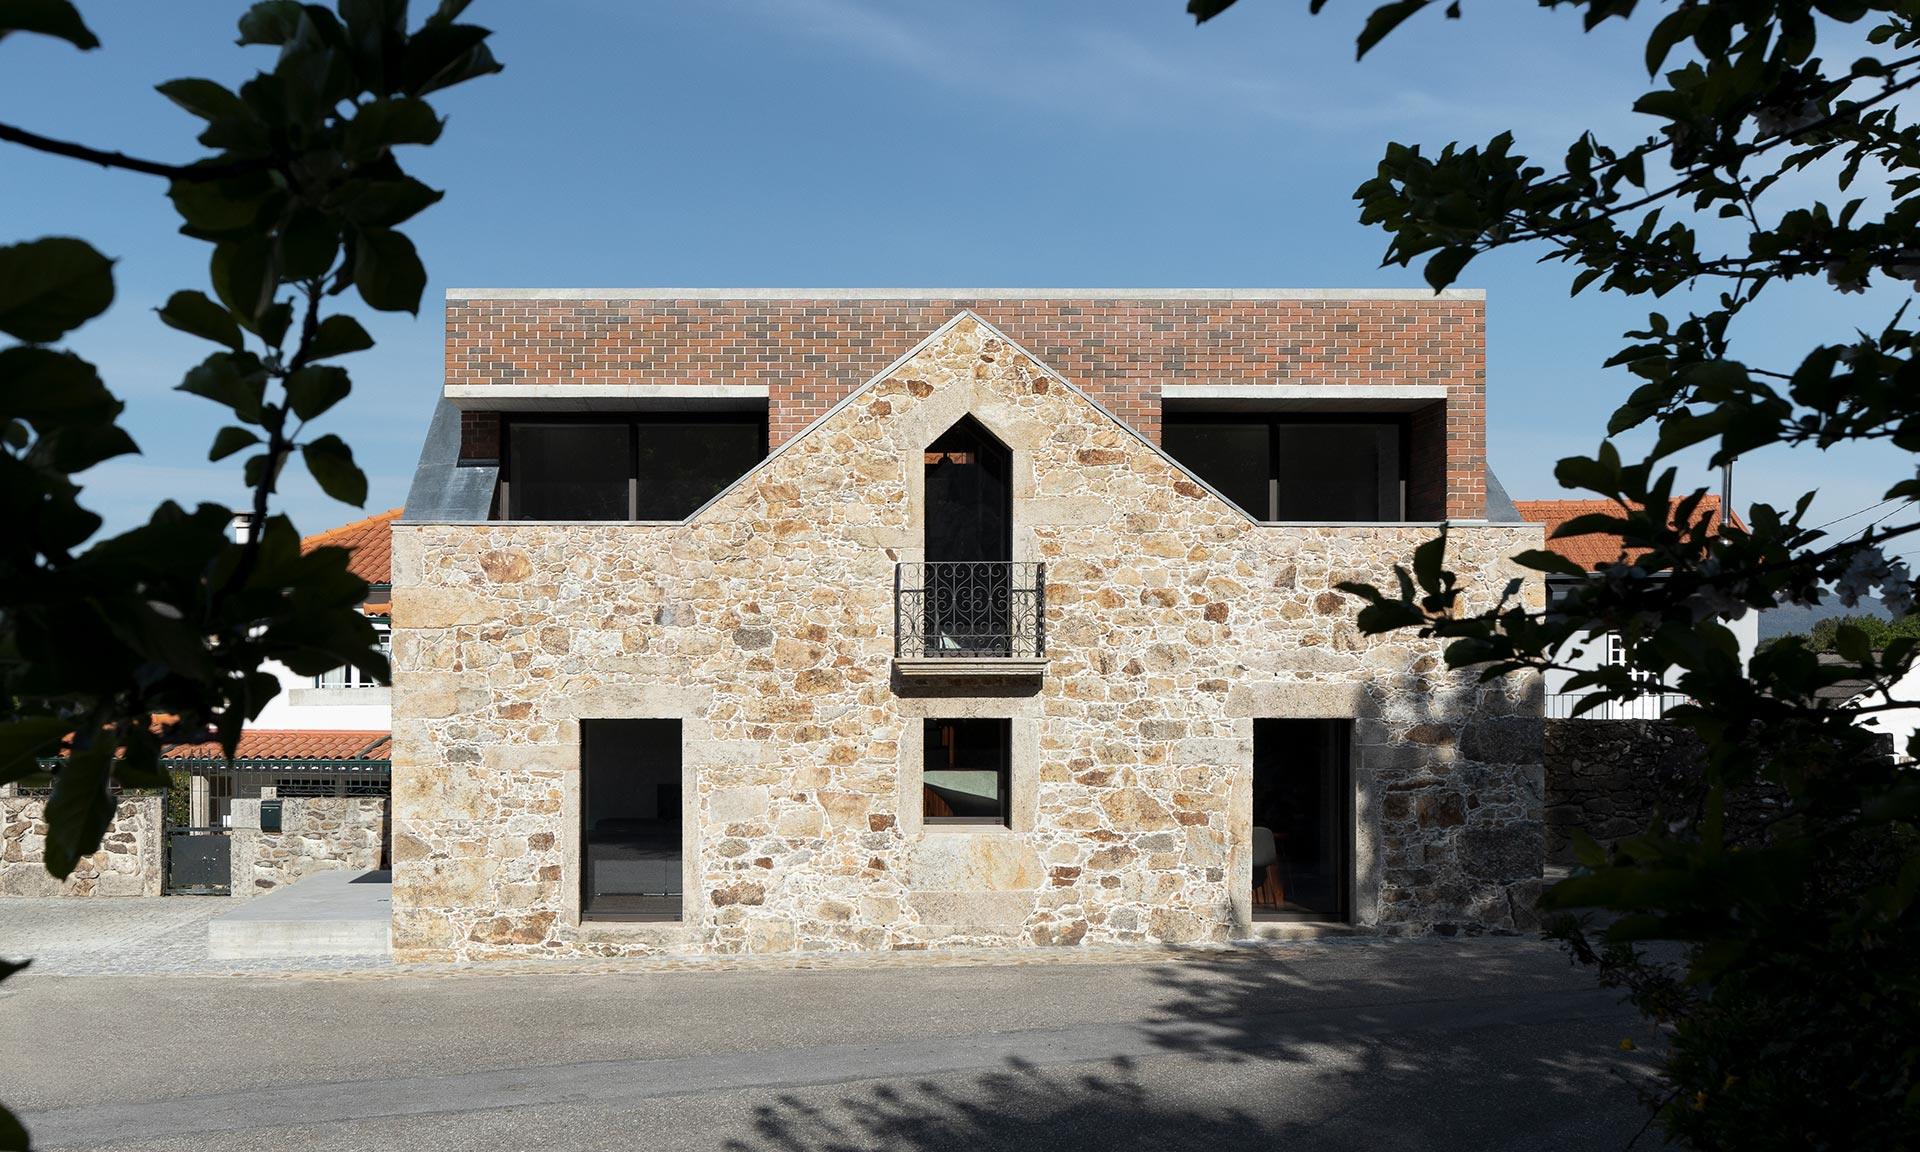 V Portugalské vesnici opravili kamennou ruinu a vestavěli do ní dům s tvarem kvádru